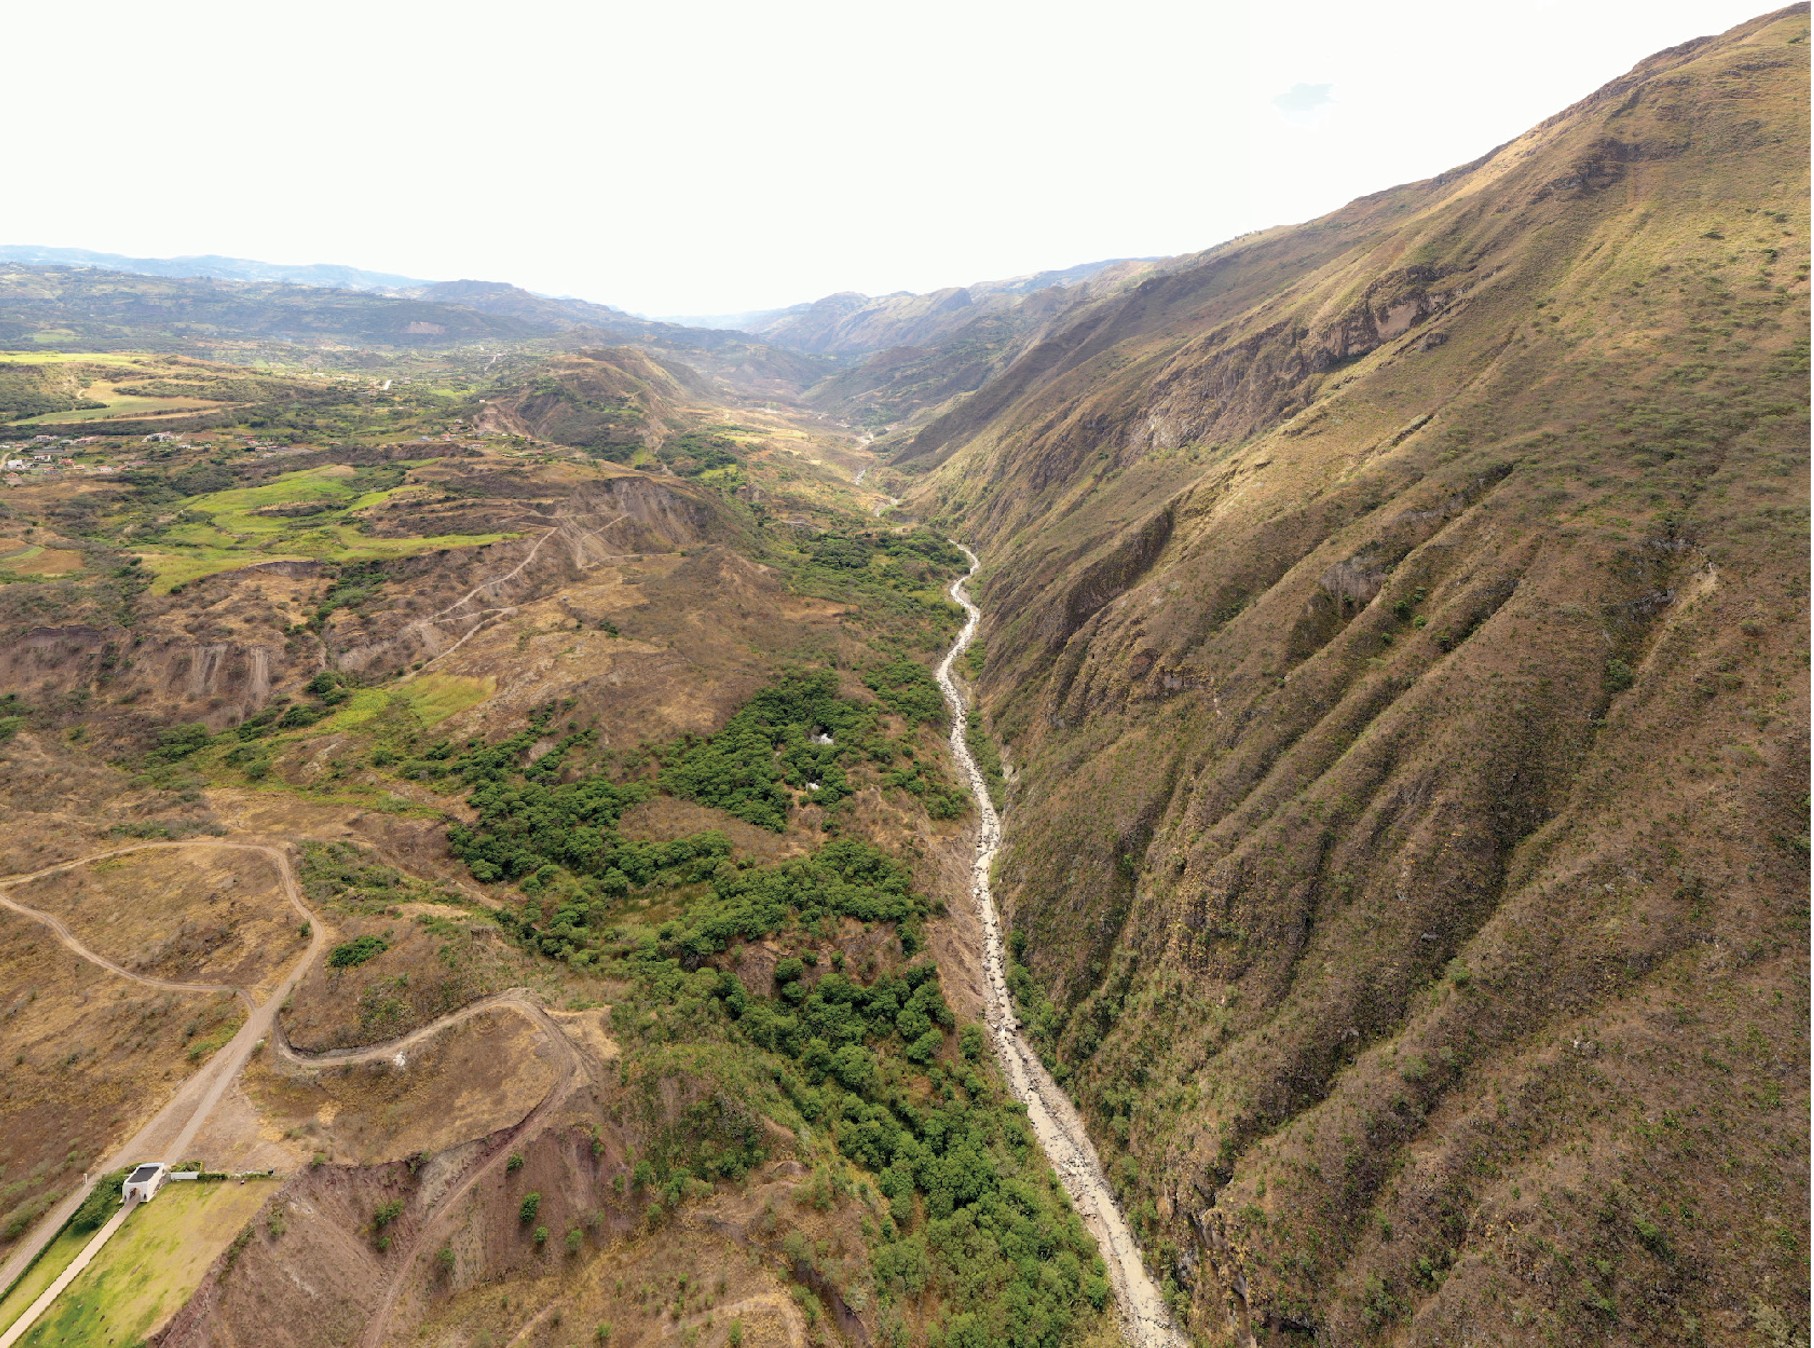 Vista panorámica de la cuenca del río Jubones en el sur de Ecuador. Foto: Santiago Ron.